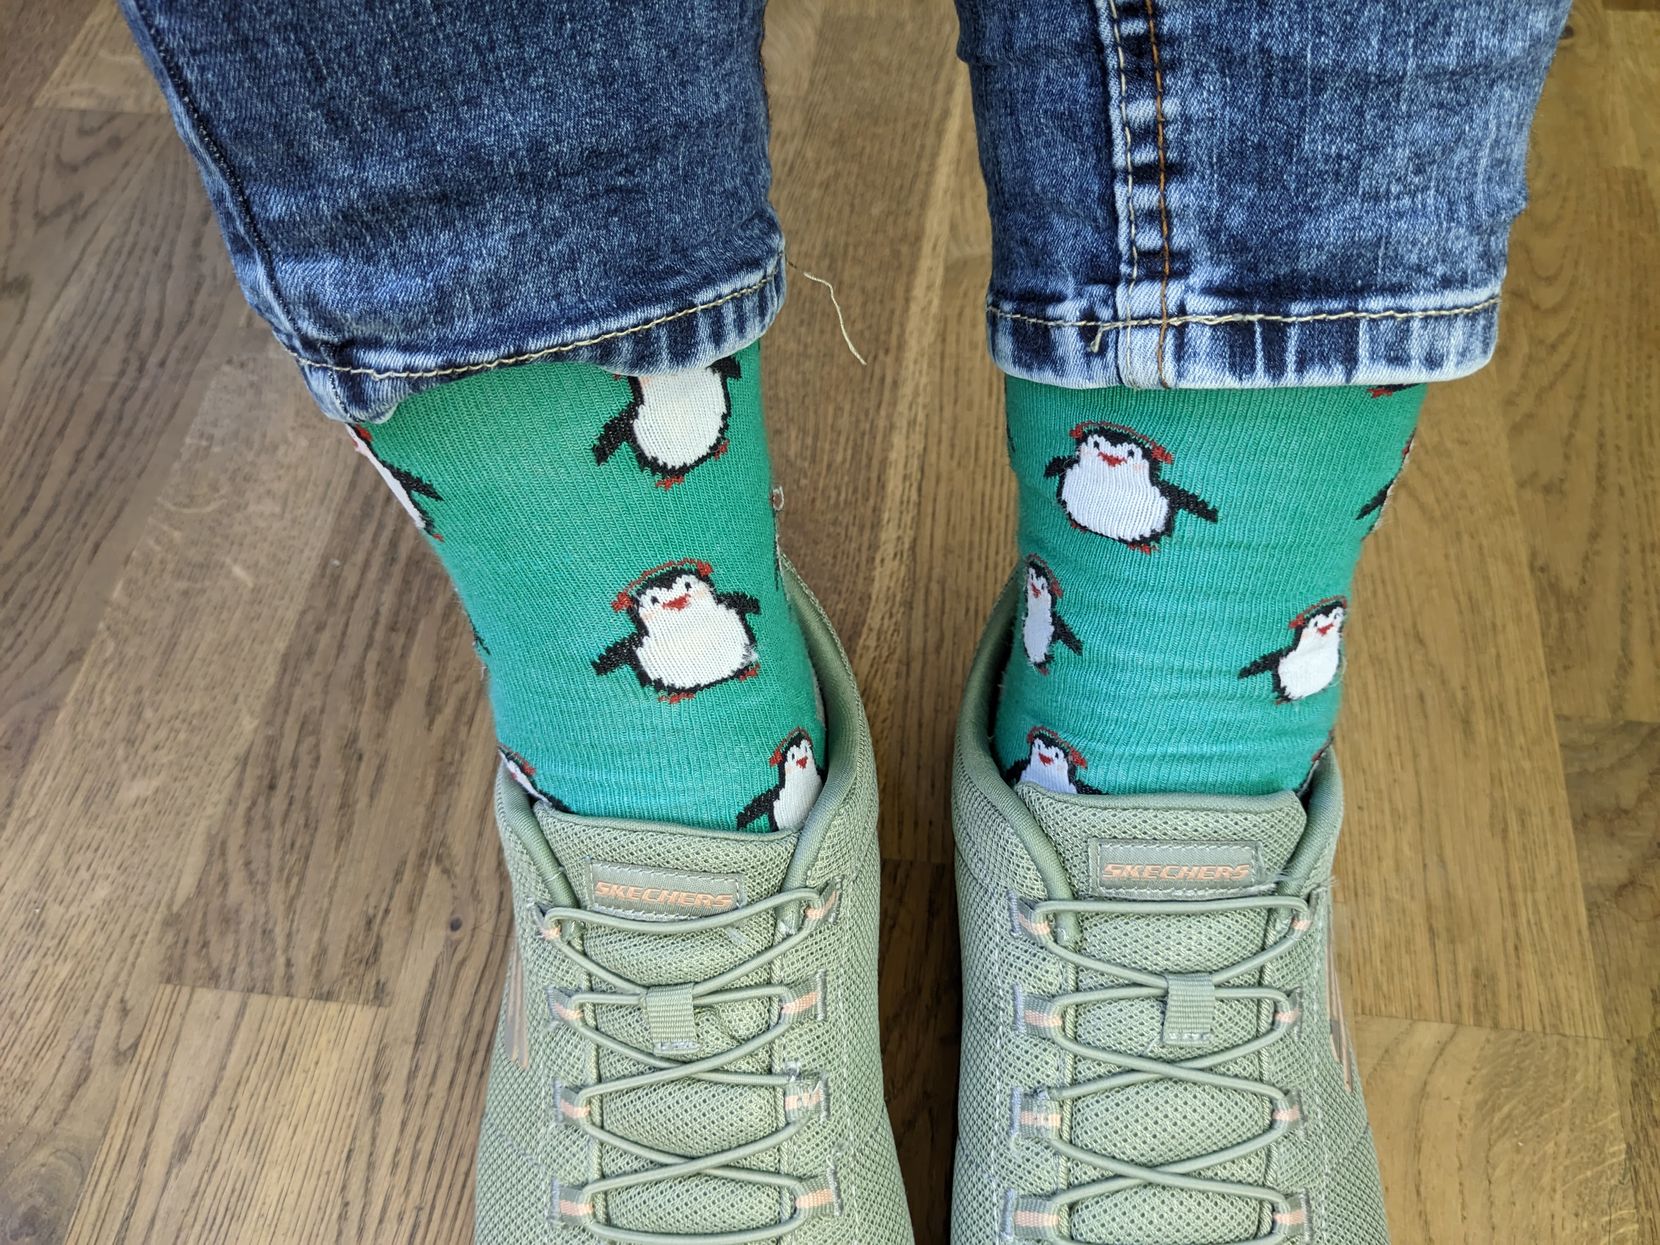 Man sieht Socken mit Pinguinen in grünen Schuhen.